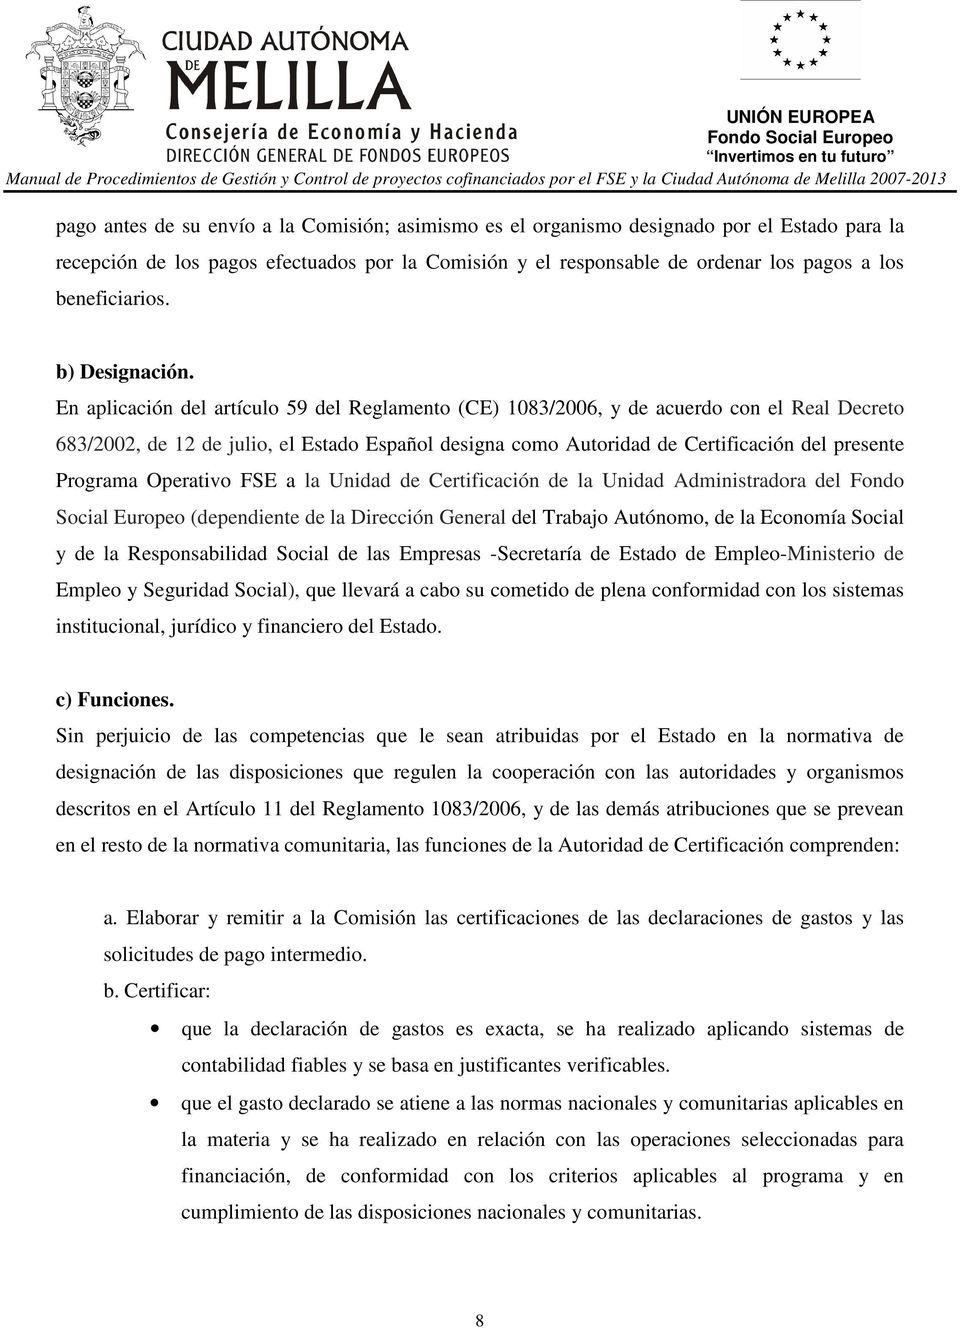 En aplicación del artículo 59 del Reglamento (CE) 1083/2006, y de acuerdo con el Real Decreto 683/2002, de 12 de julio, el Estado Español designa como Autoridad de Certificación del presente Programa